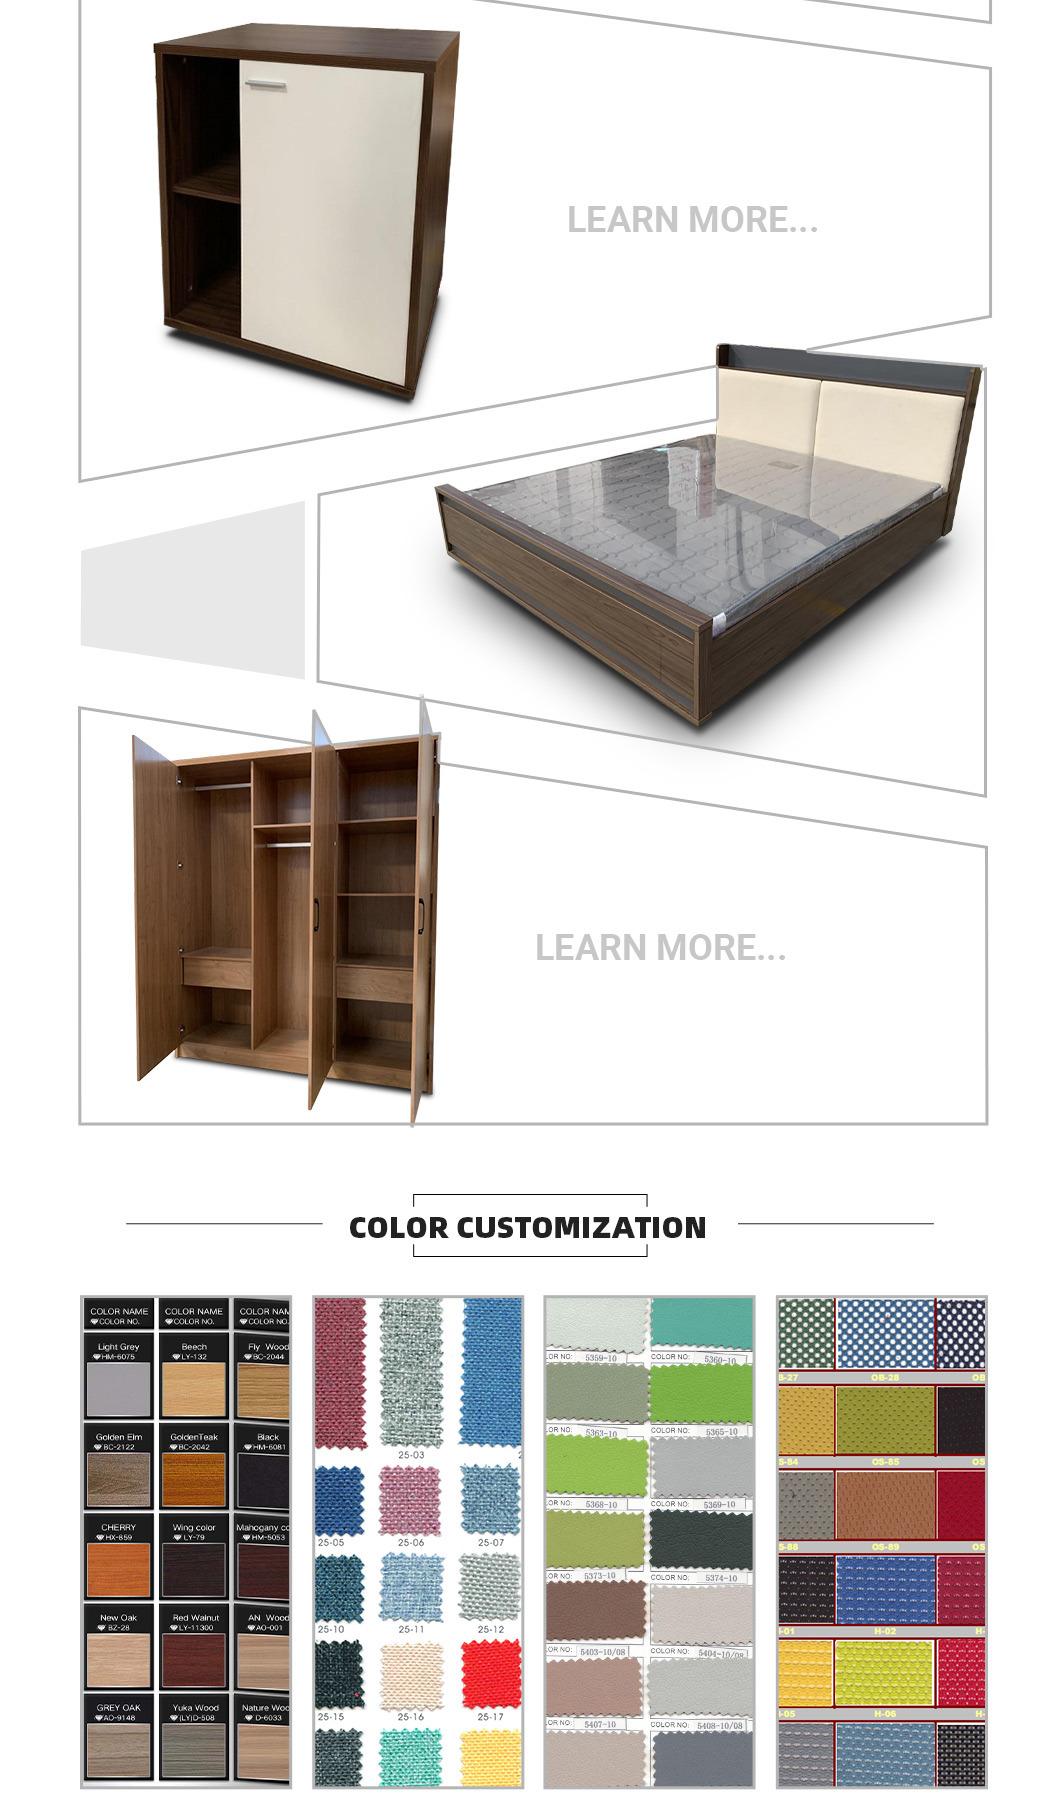 Modern Design Bedroom Wooden Melamine Laminated Bed MDF Hotel Furniture Beds